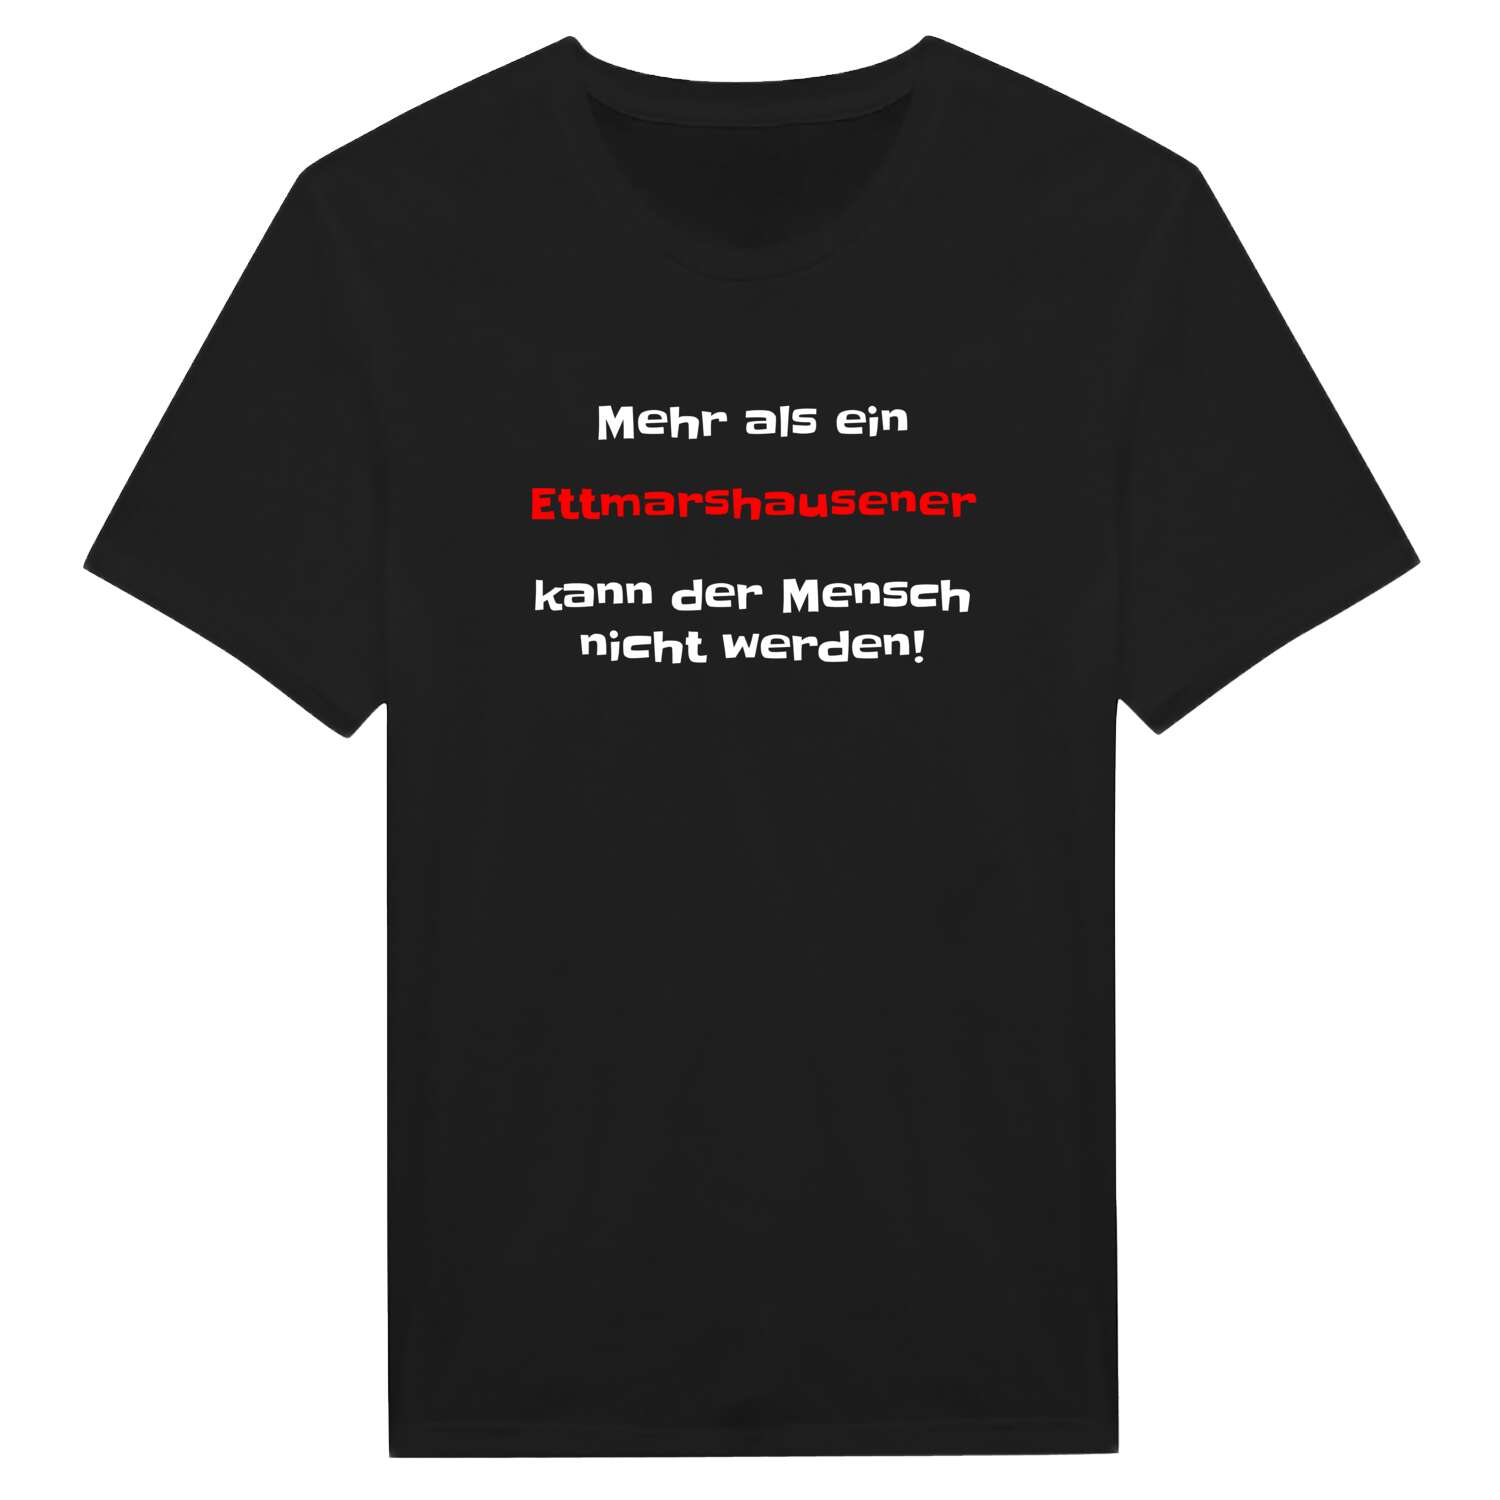 Ettmarshausen T-Shirt »Mehr als ein«